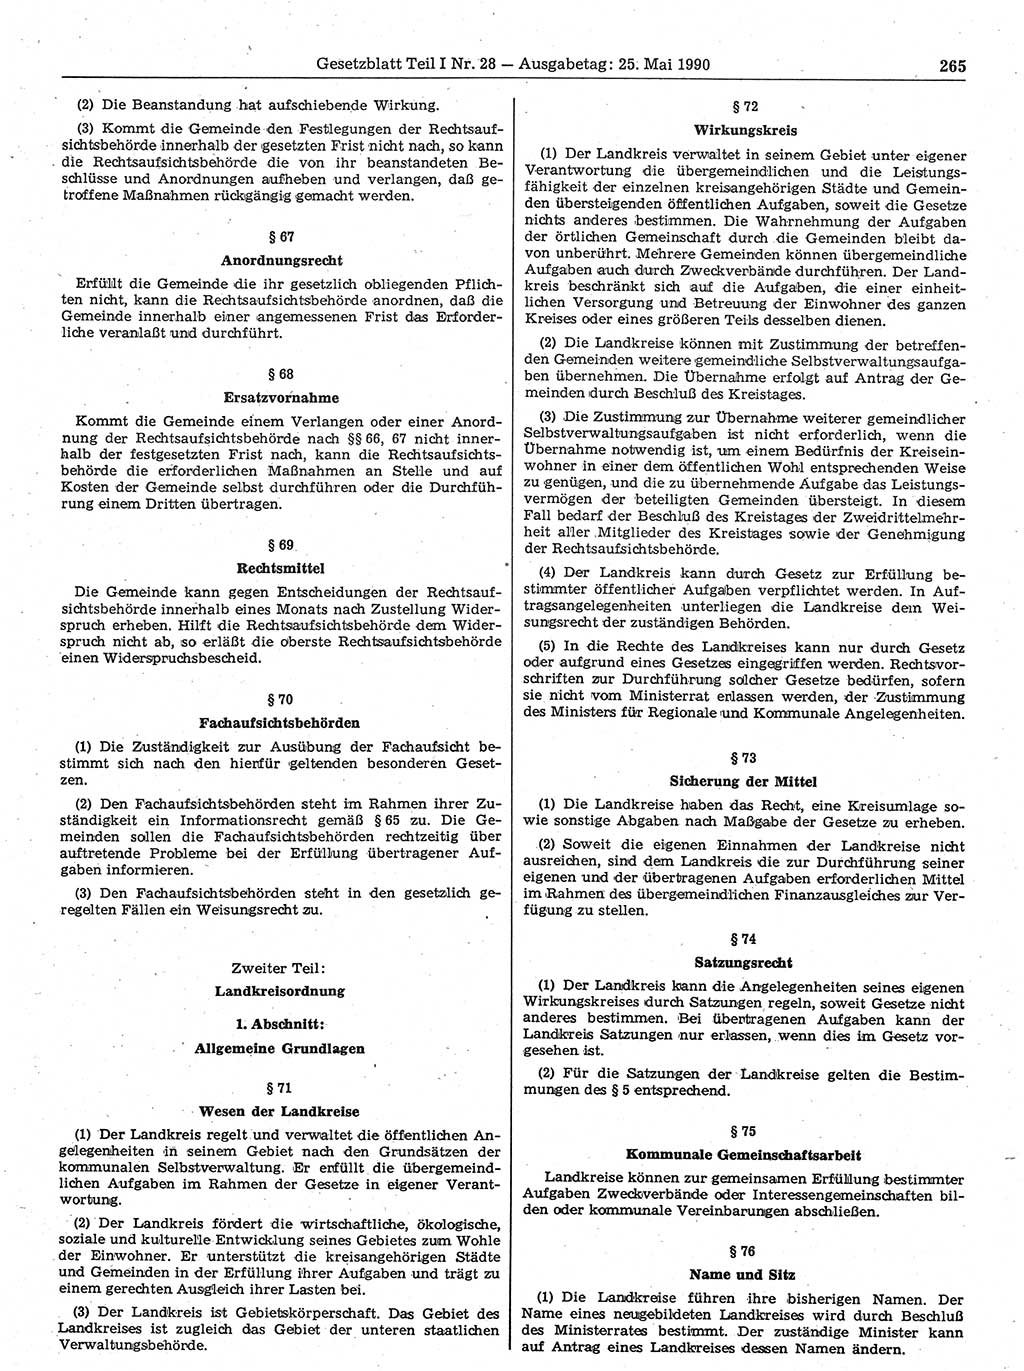 Gesetzblatt (GBl.) der Deutschen Demokratischen Republik (DDR) Teil Ⅰ 1990, Seite 265 (GBl. DDR Ⅰ 1990, S. 265)